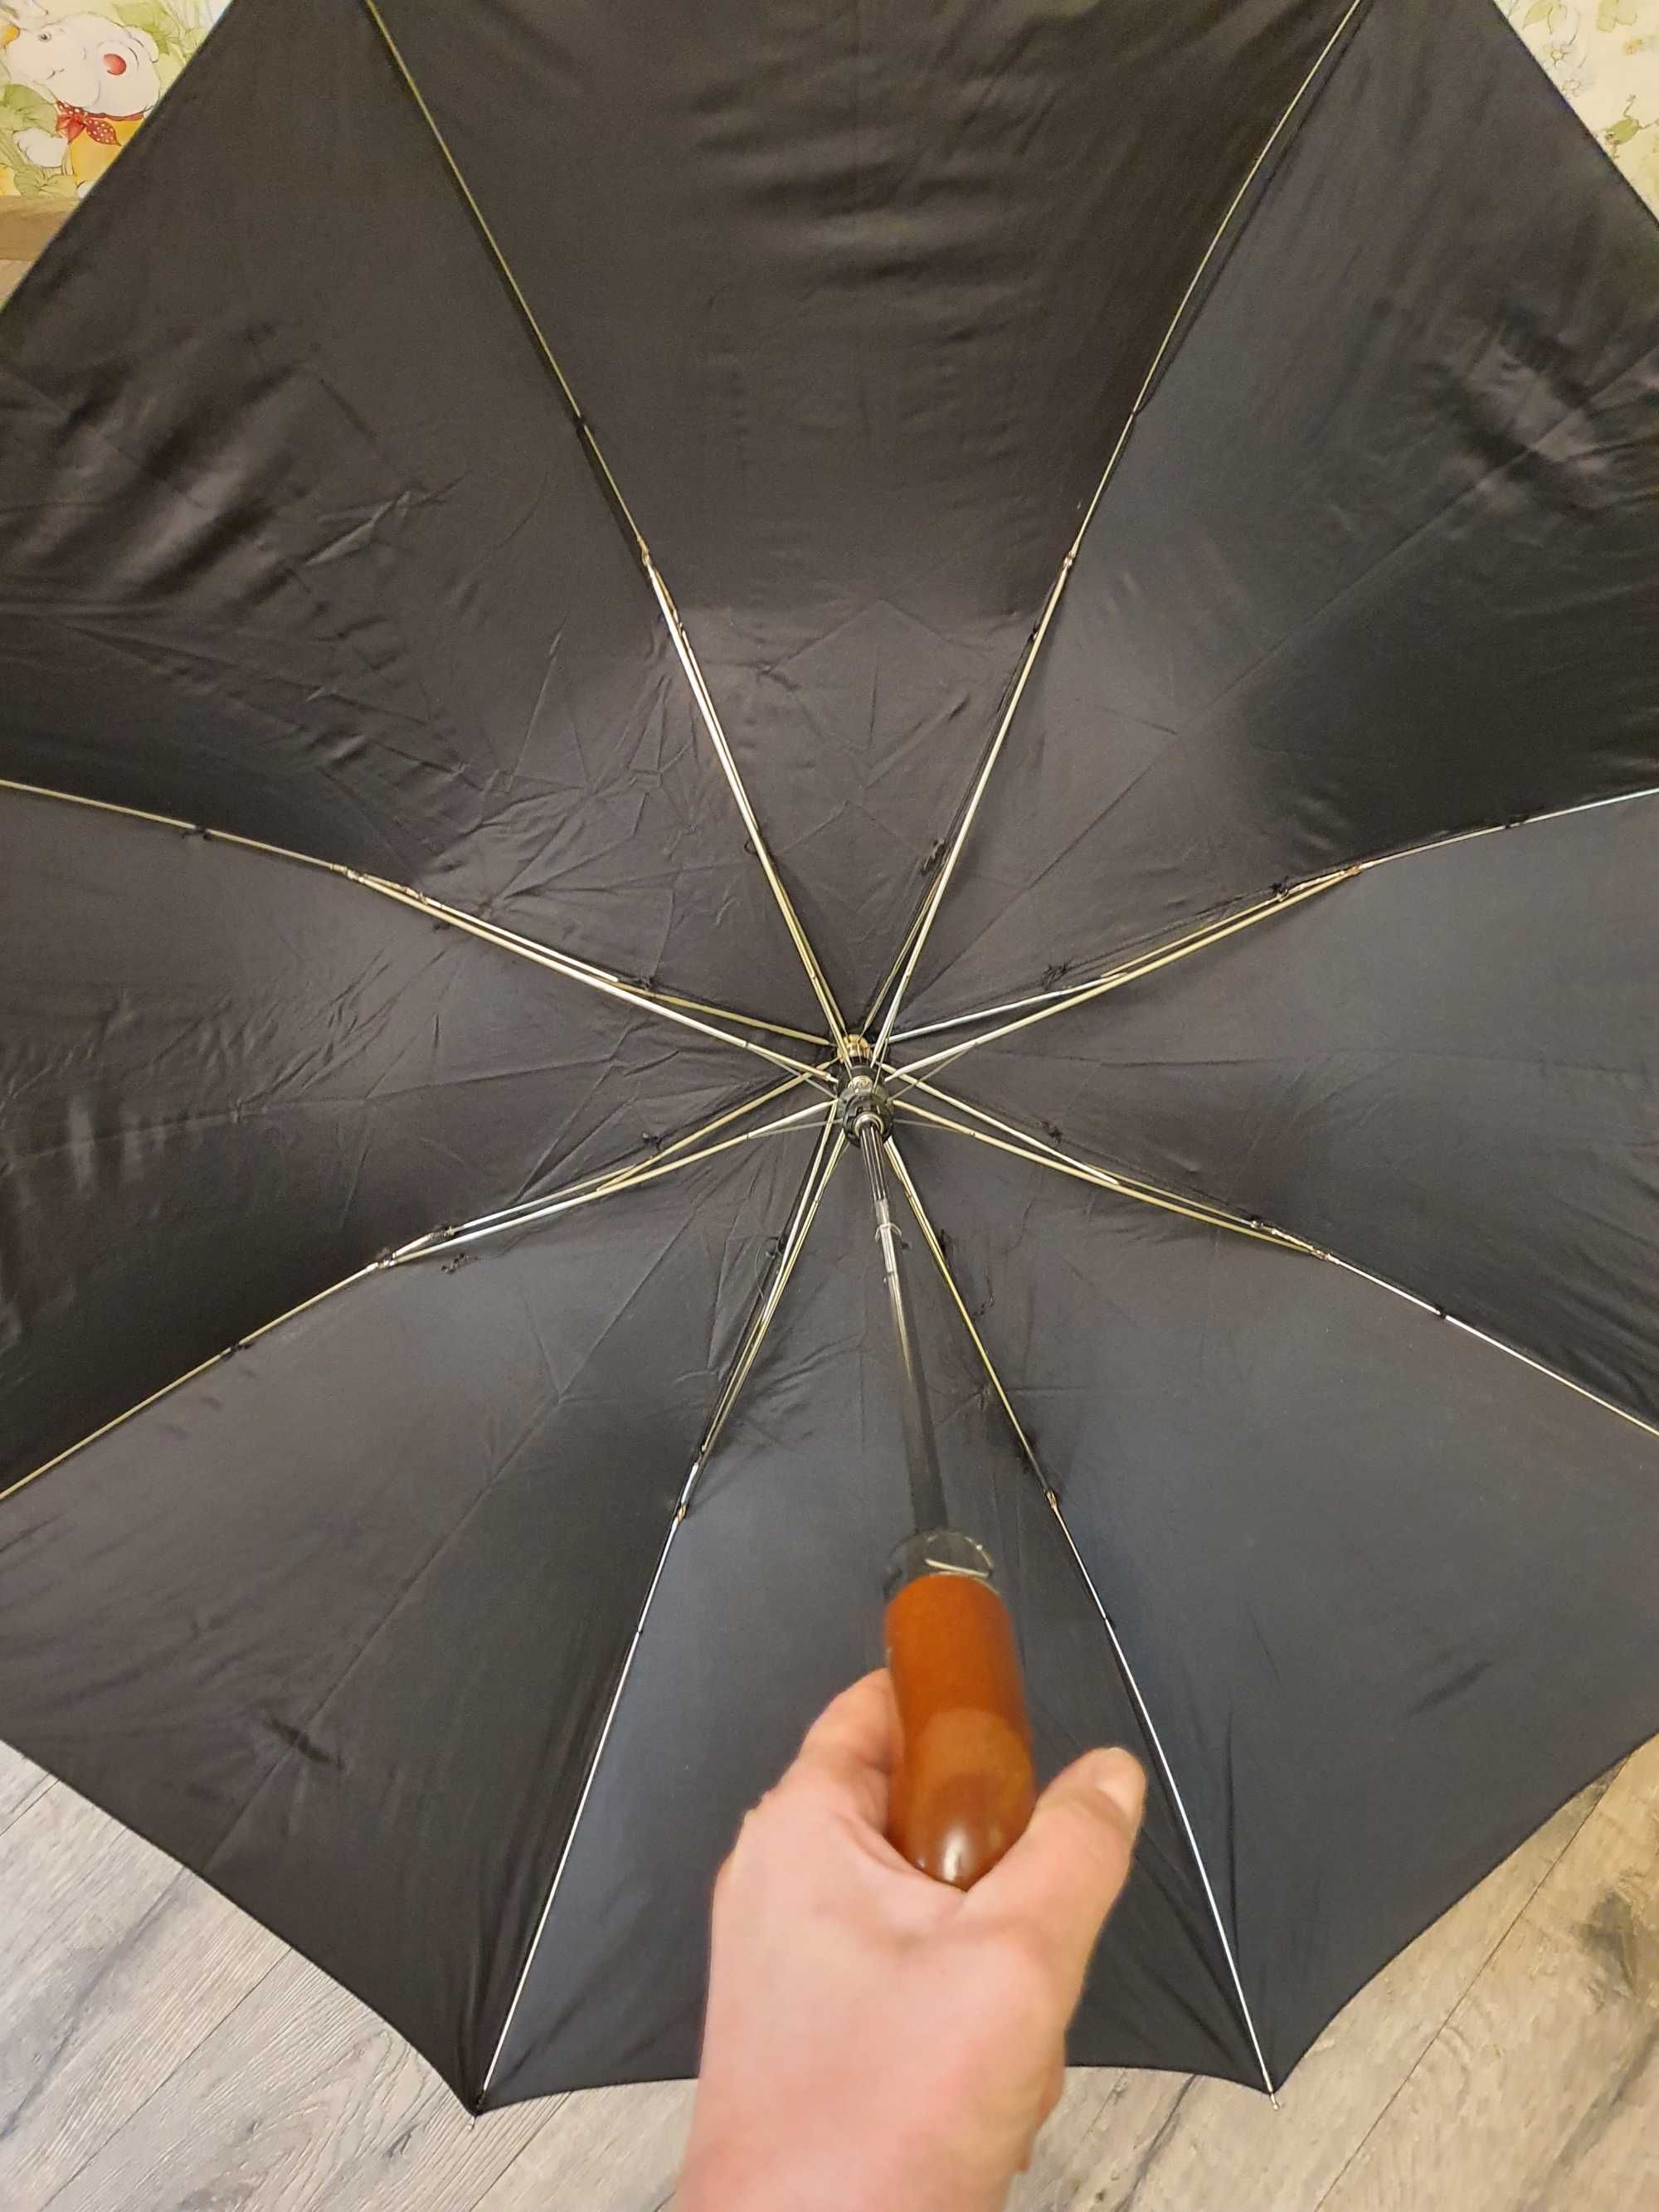 Зонт/парасоля  .